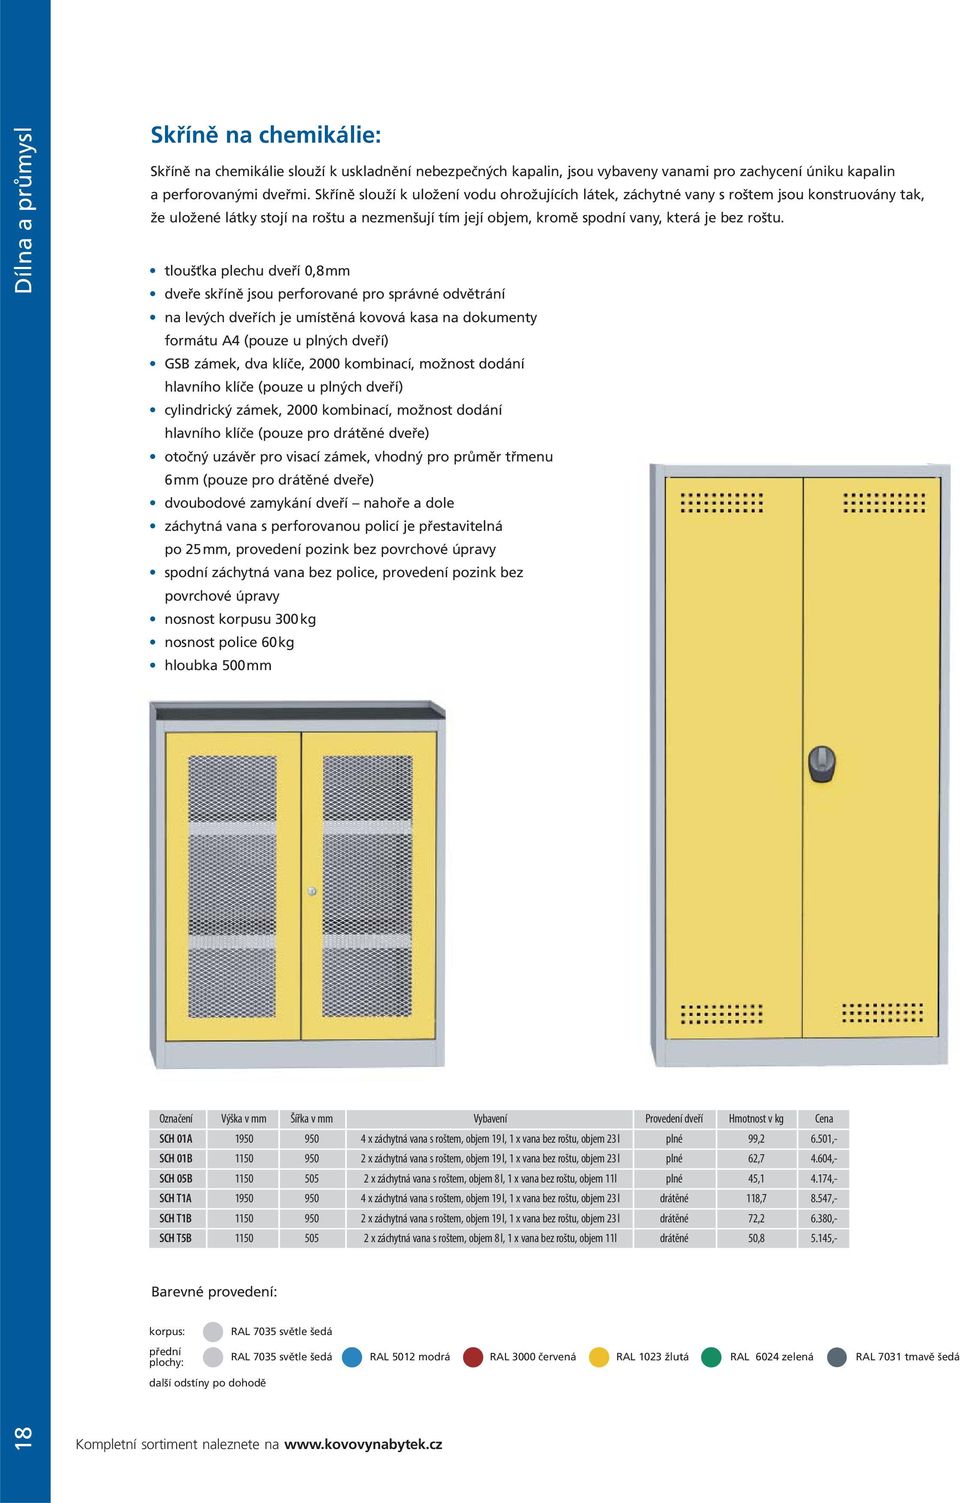 tloušťka plechu dveří 0,8 mm dveře skříně jsou perforované pro správné odvětrání na levých dveřích je umístěná kovová kasa na dokumenty formátu A4 (pouze u plných dveří) GSB zámek, dva klíče, 2000